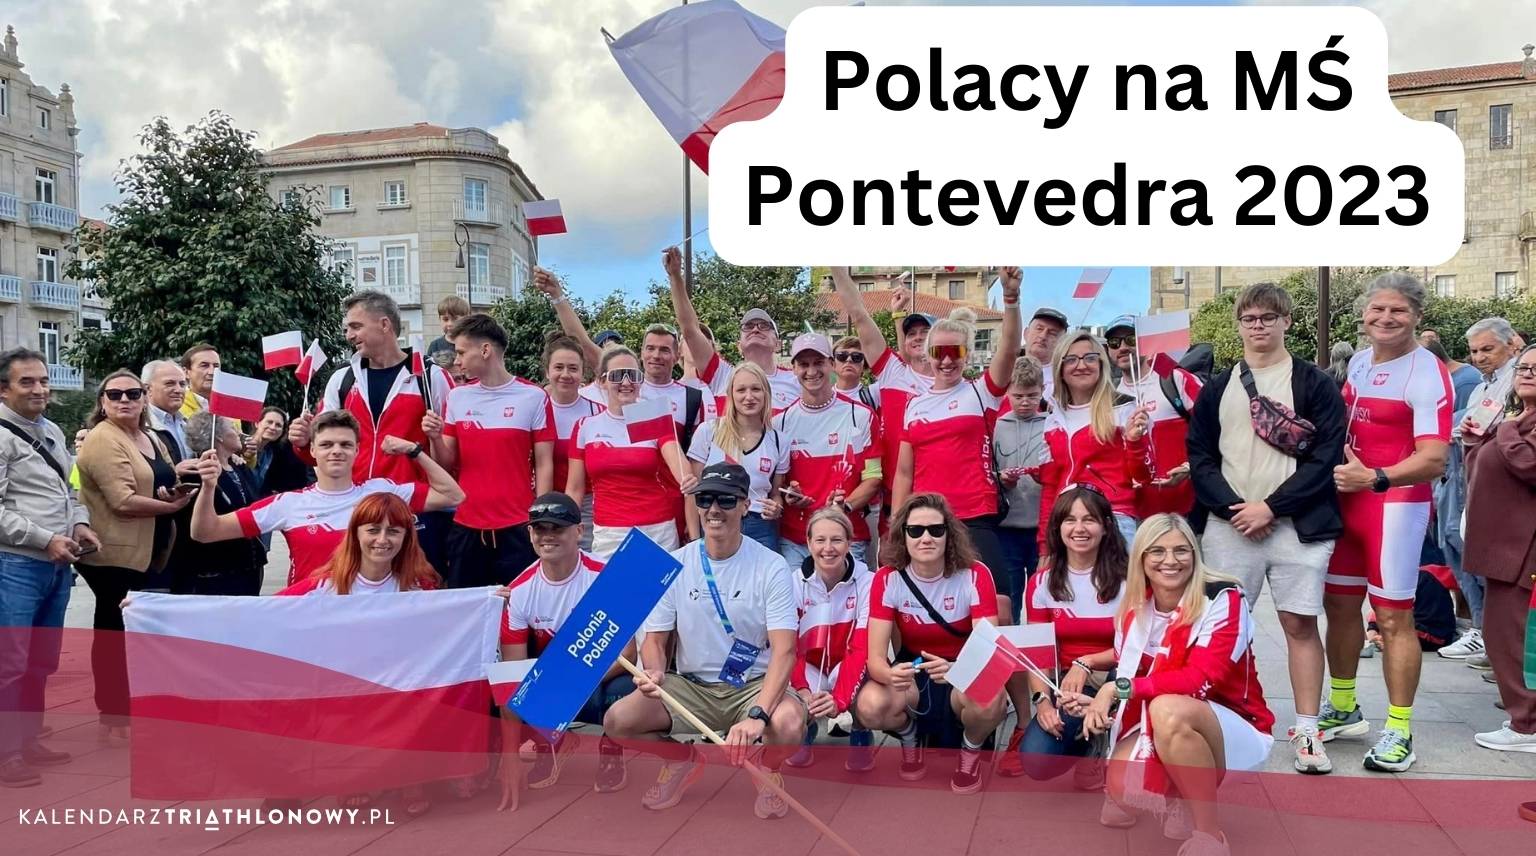 Pontevedra 2023: Polacy na Mistrzostwach Świata w Triathlonie i Aquabike